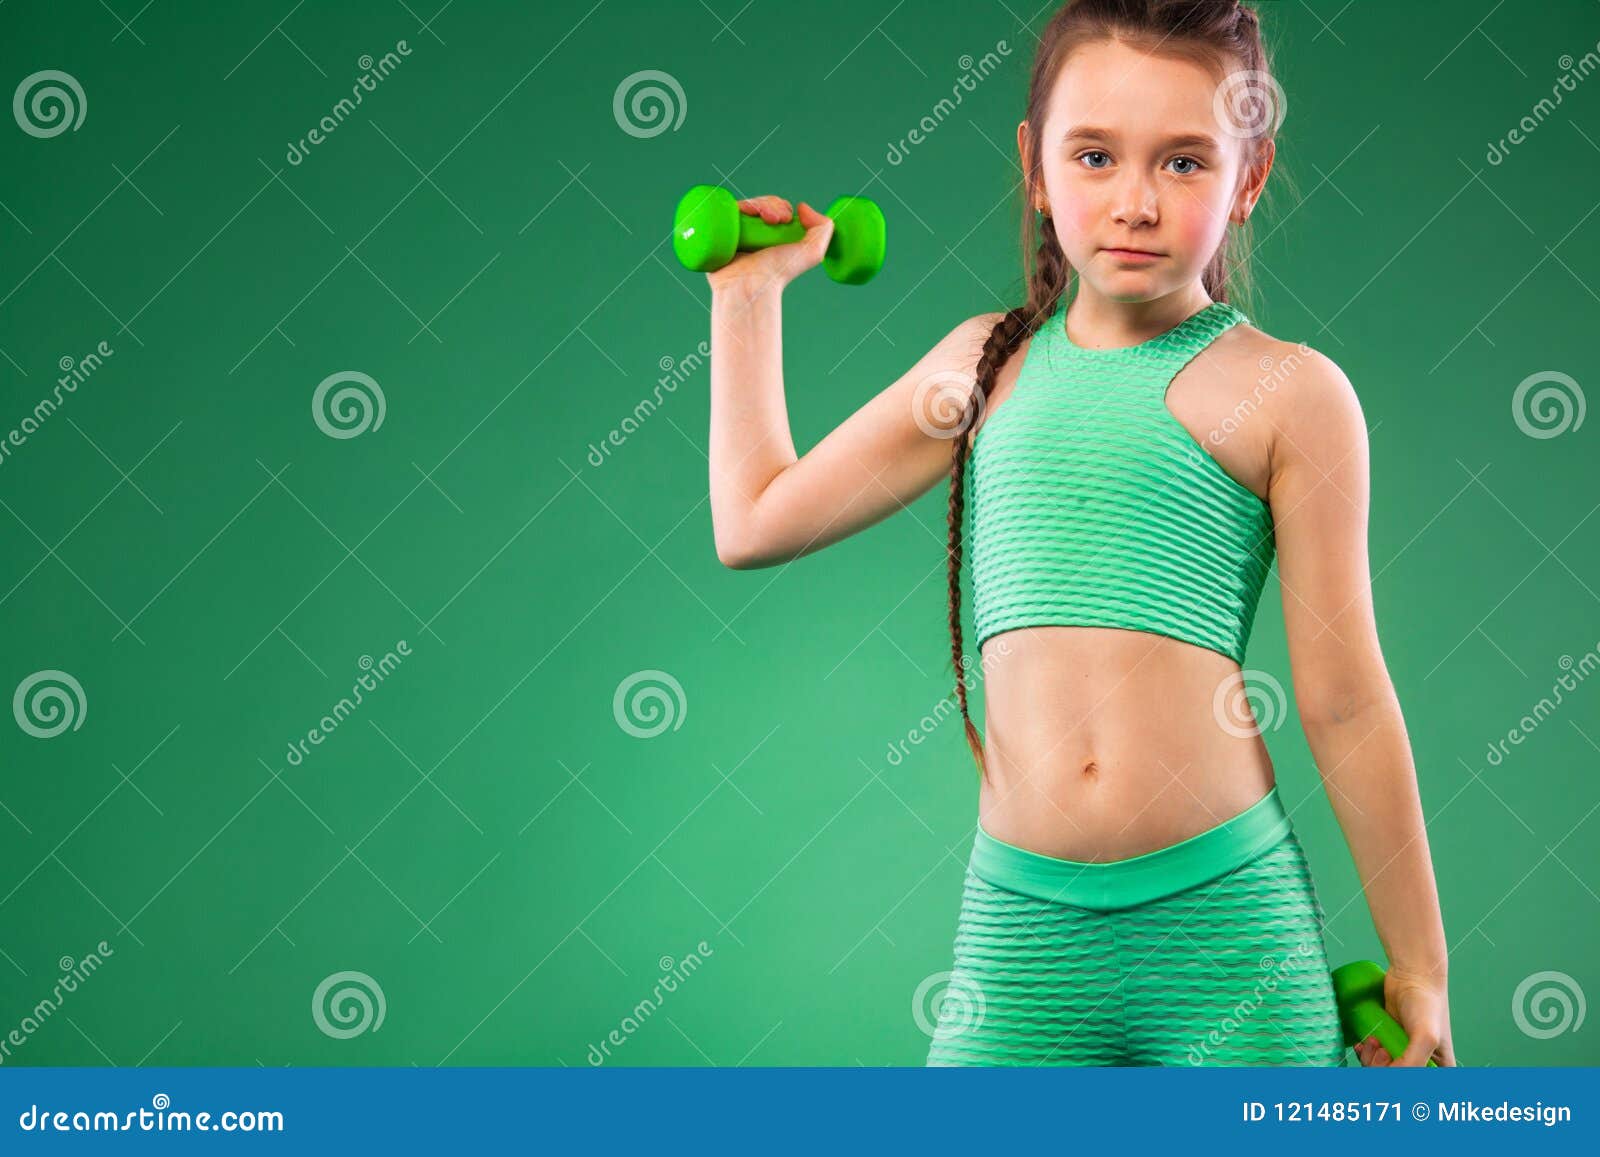 Kid Girl Doing Fitness Exercises on Green Background Stock Image ...